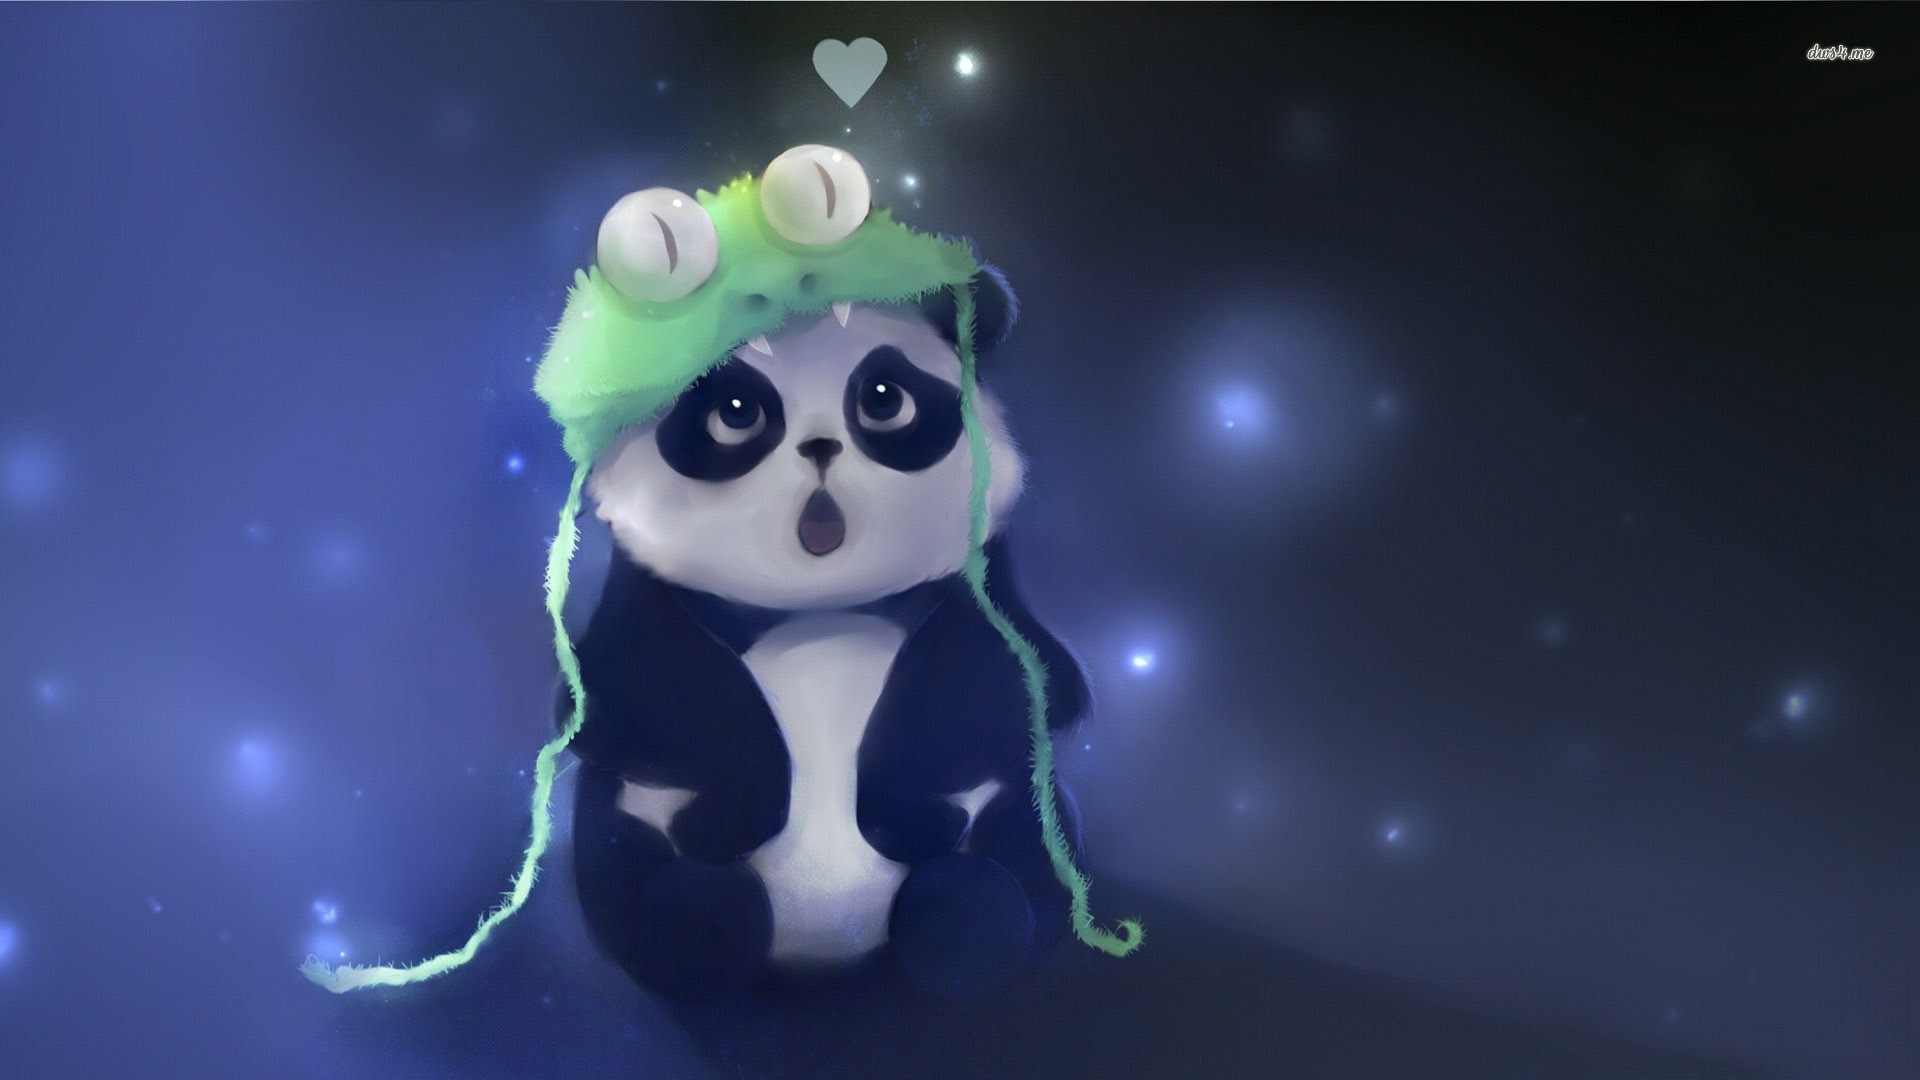 1920x1080 Cute Panda fond ecran hd